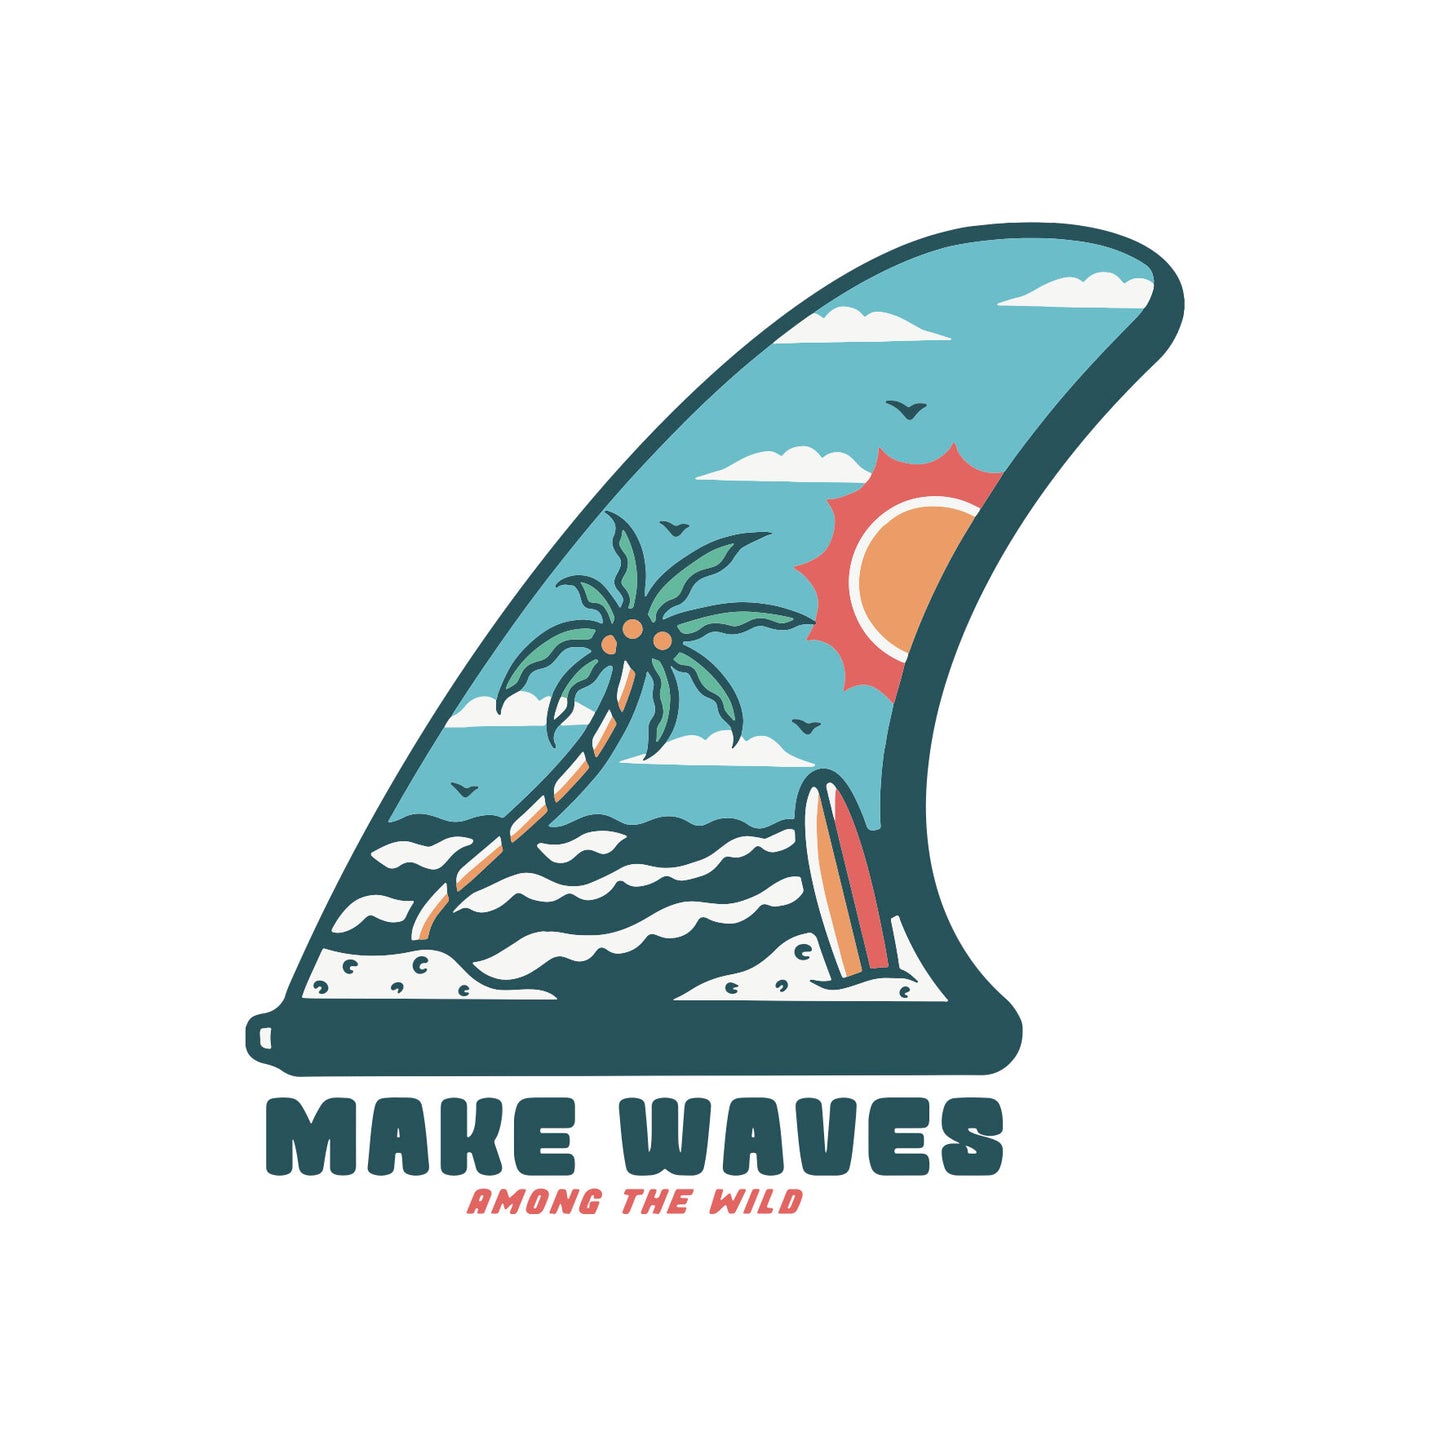 Make Waves Sticker